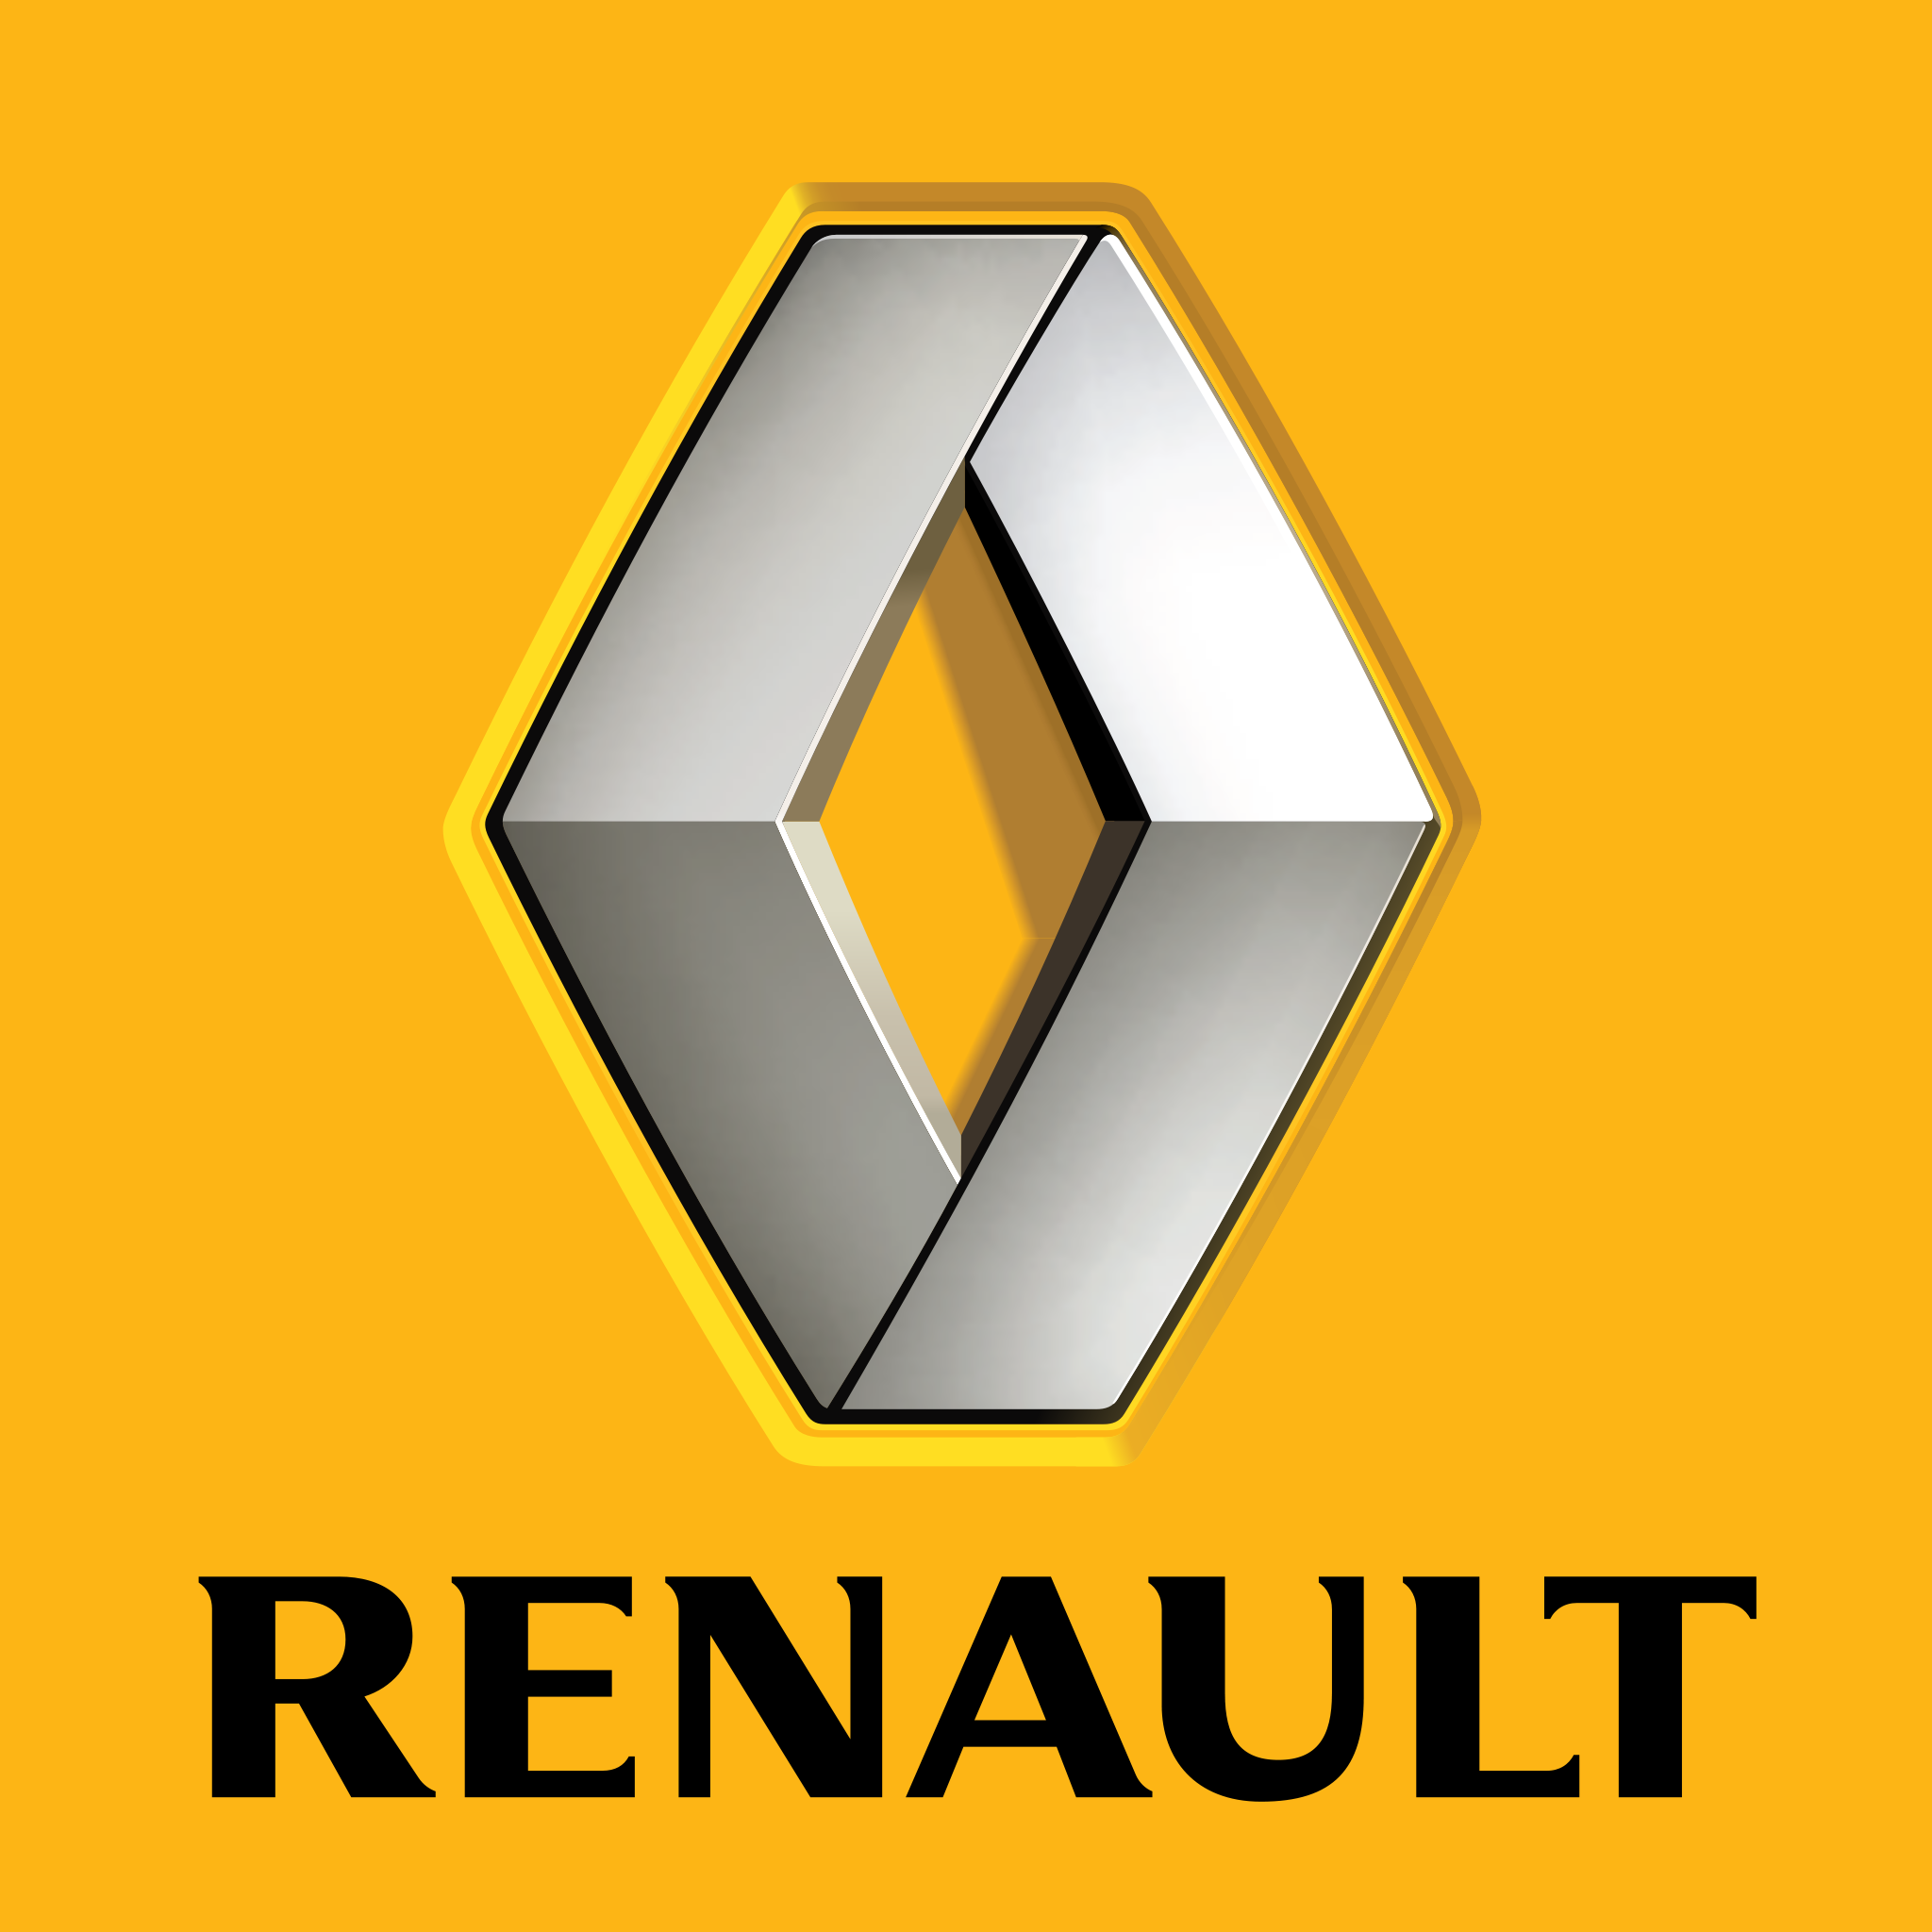 Resultado de imagen de renault logo png